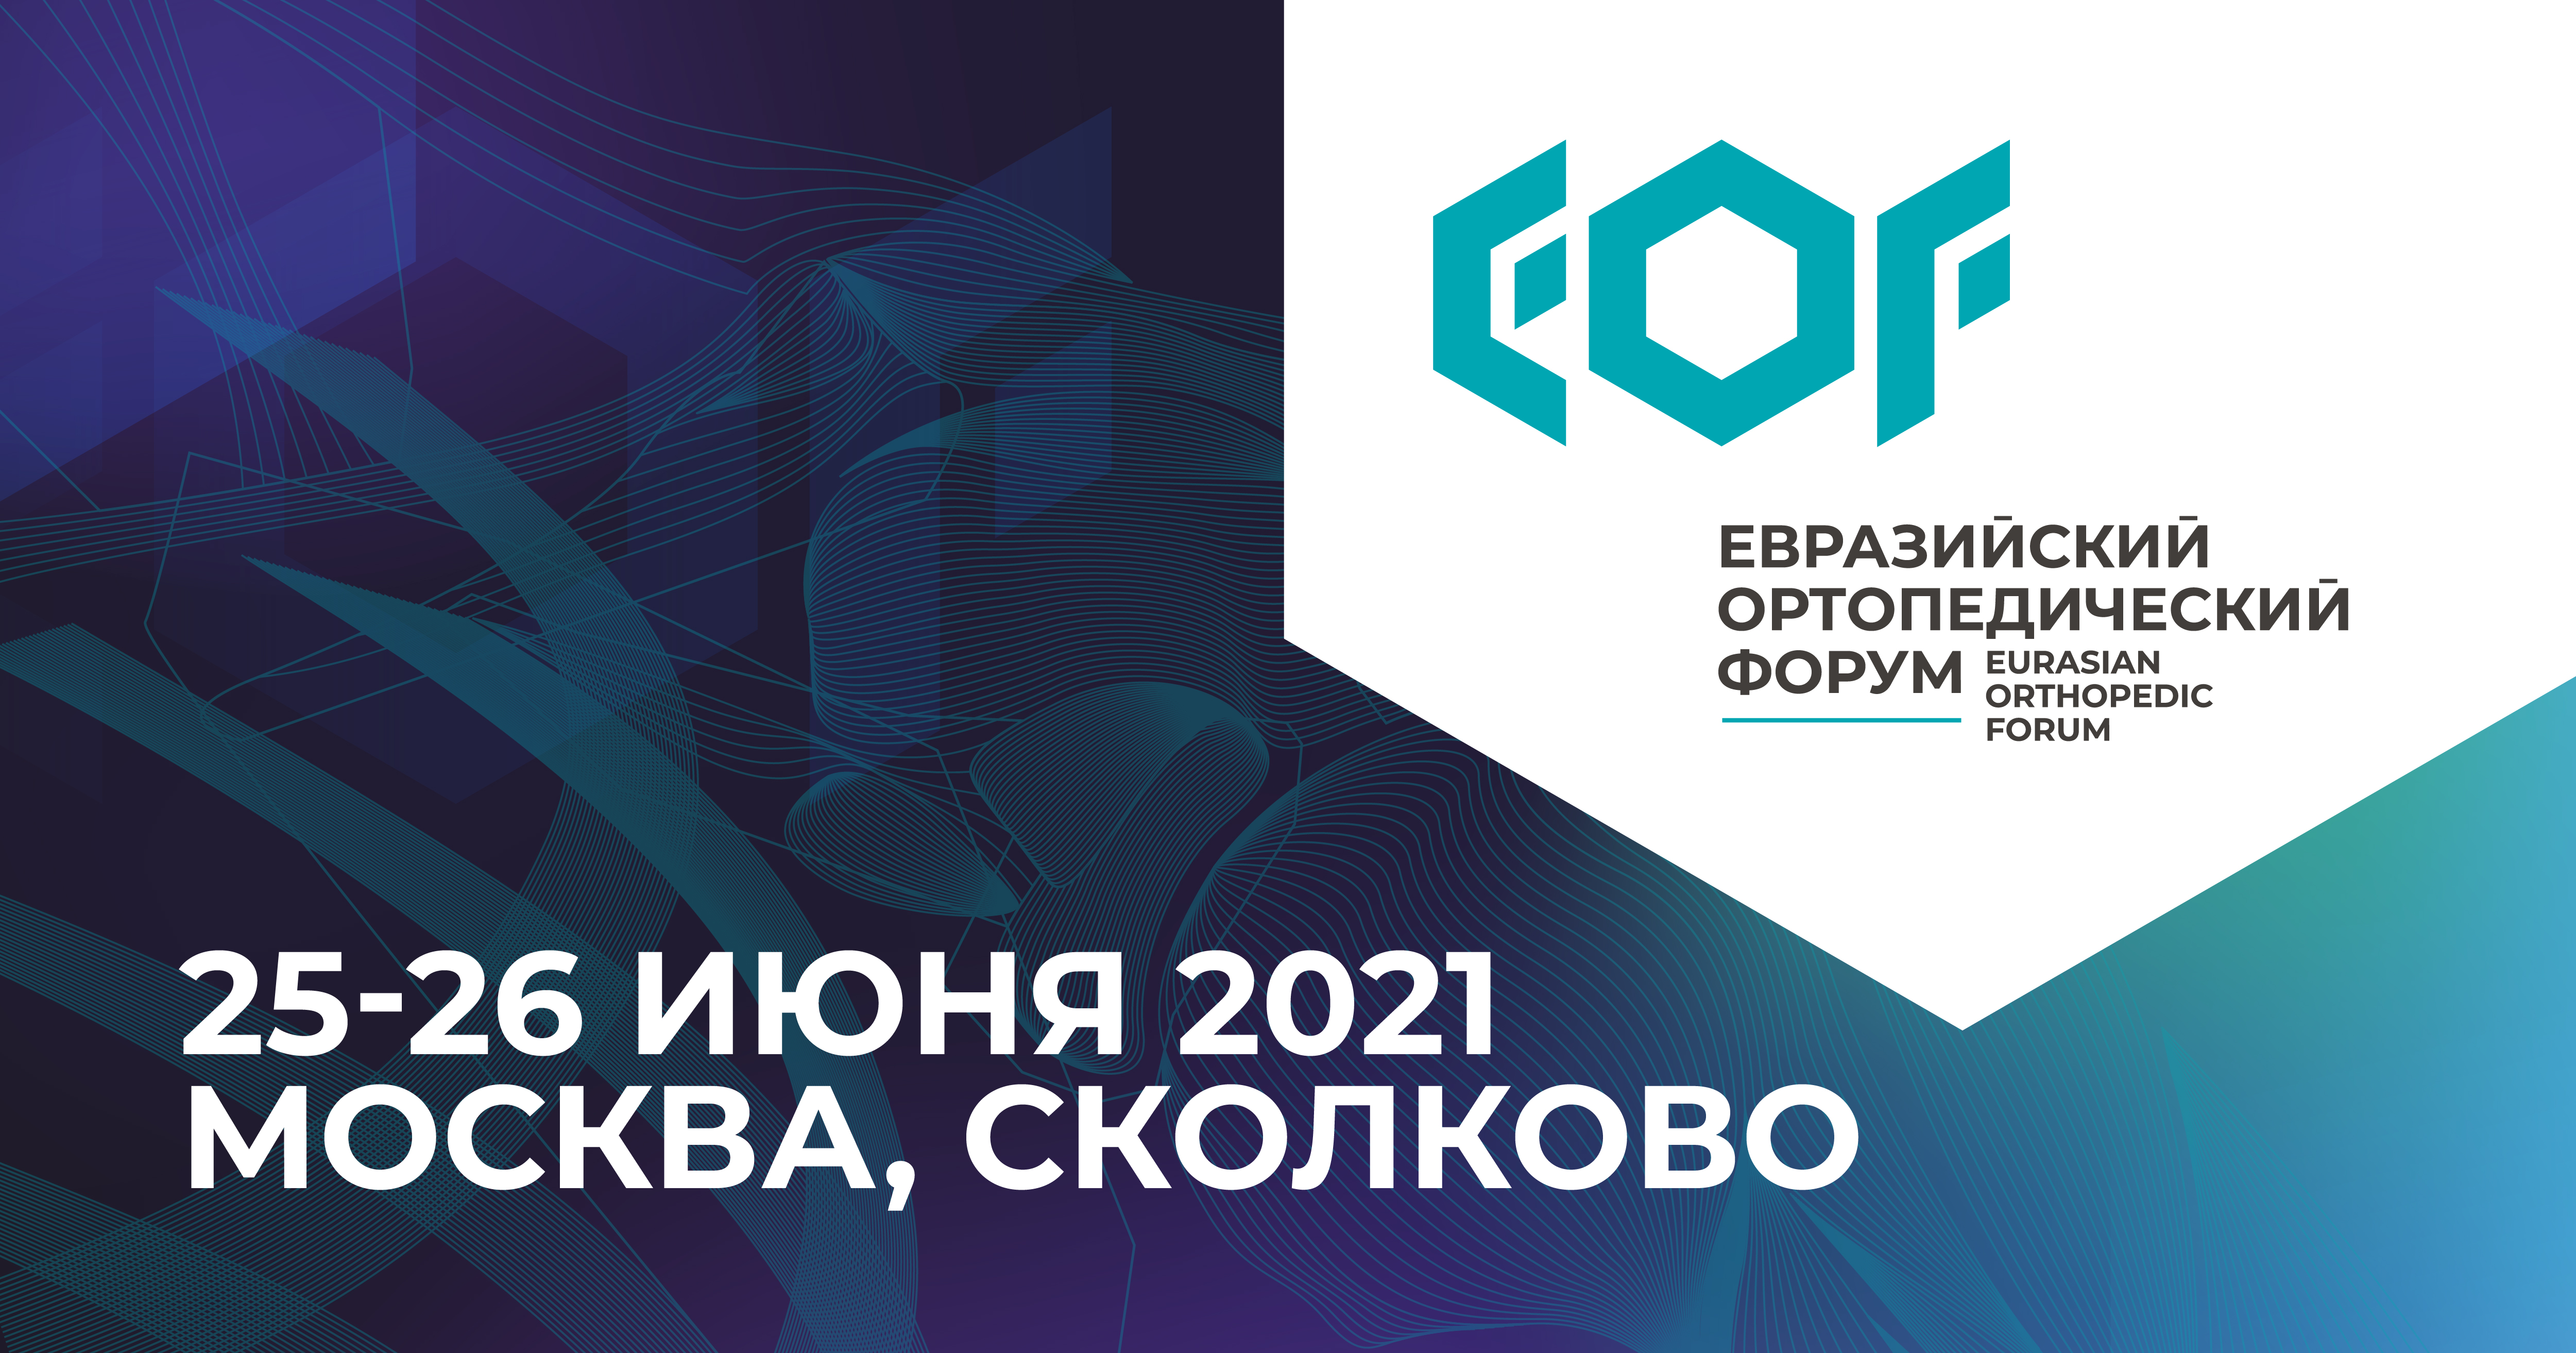 Научная программа Евразийского ортопедического форума — 2021 объединит более 300 докладчиков